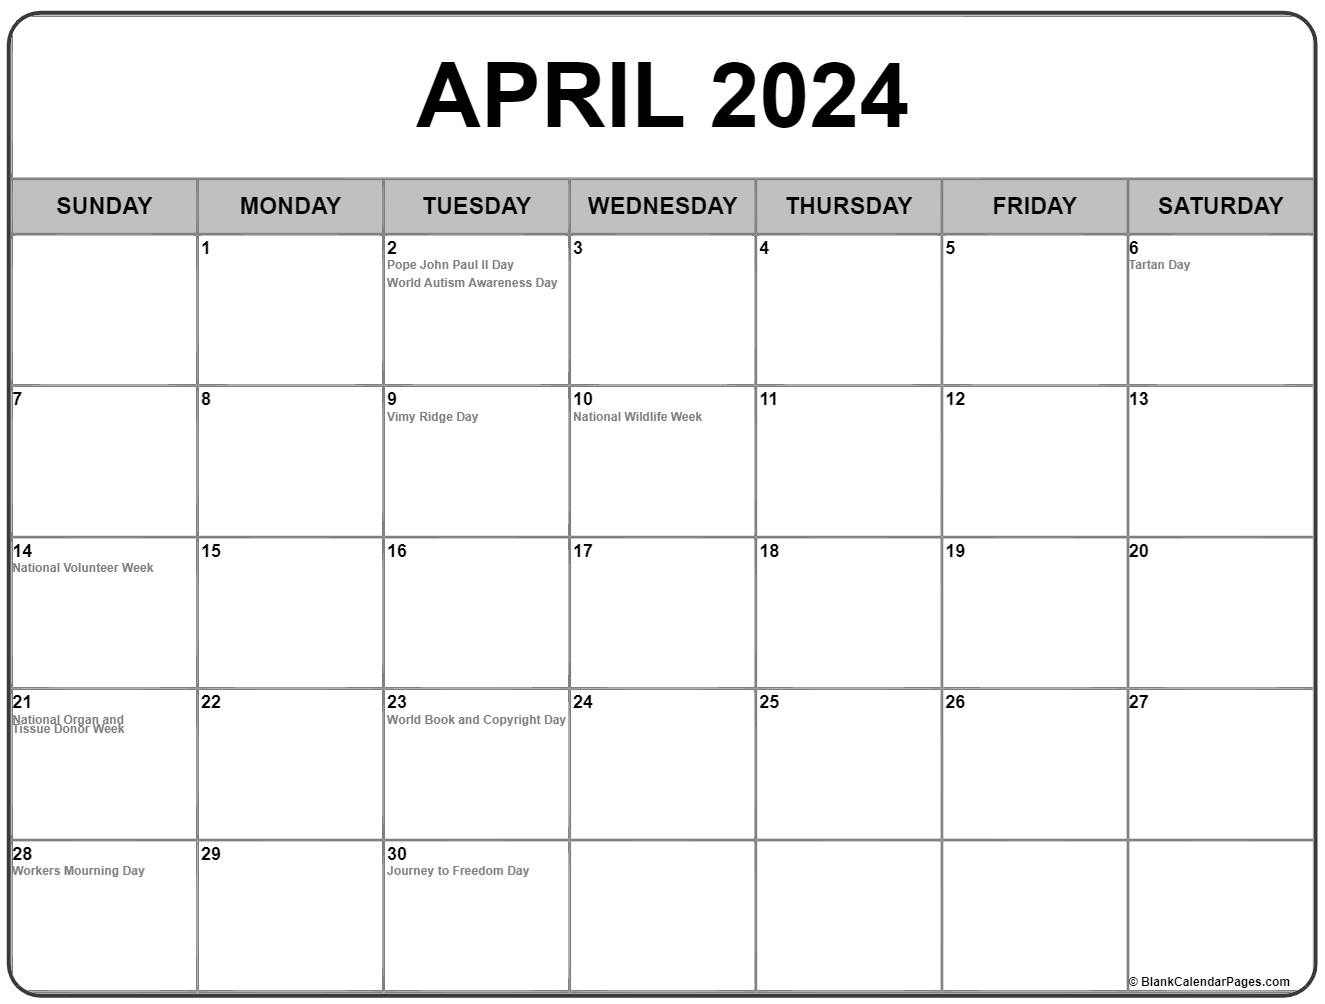 April 2022 Calendar Canada